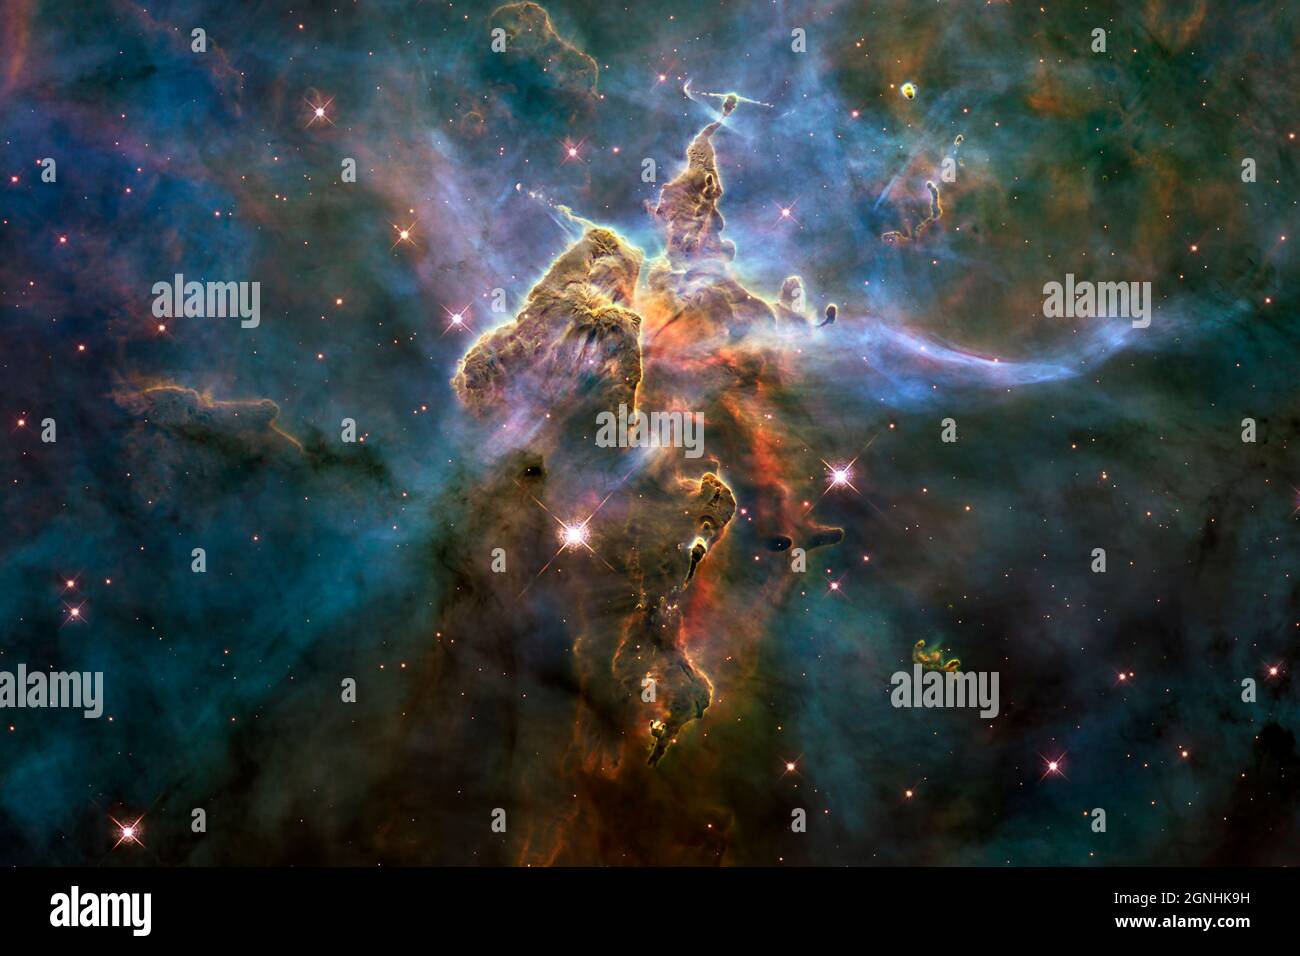 L'area di formazione delle stelle Mystic Mountain nella Carina Nebula. Esso scrofe le stelle che si formano nella polvere e i lunghi getti di polvere chiamati oggetti Herbig-Haro. Questi sono HH901 e H902. Fonte immagine NASA/ESA Hubble Space Telescope Foto Stock